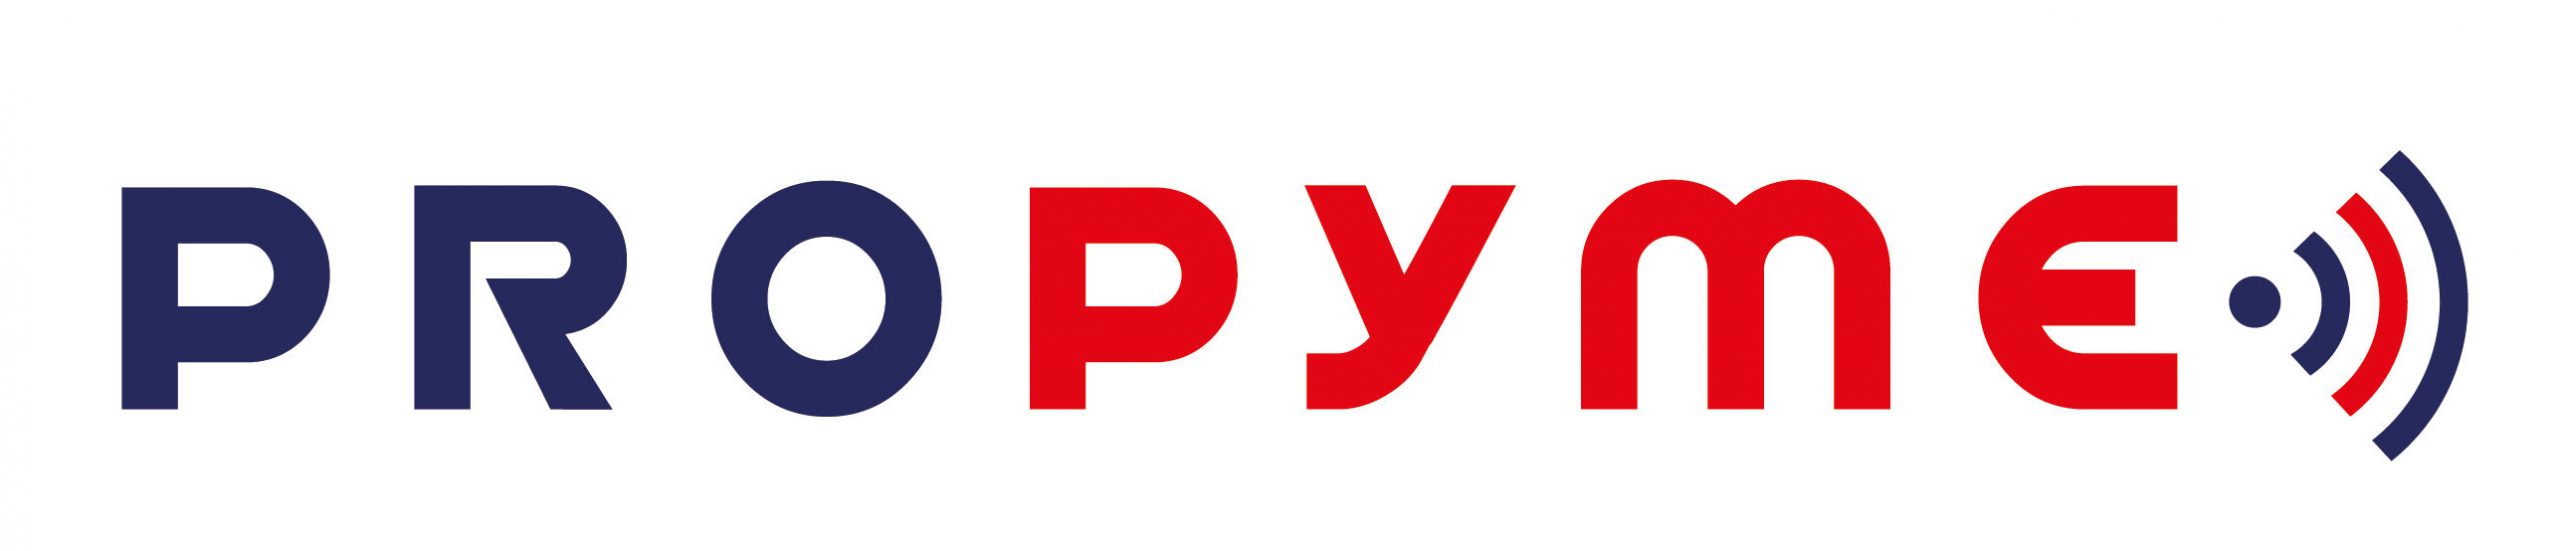 logo_propyme_2